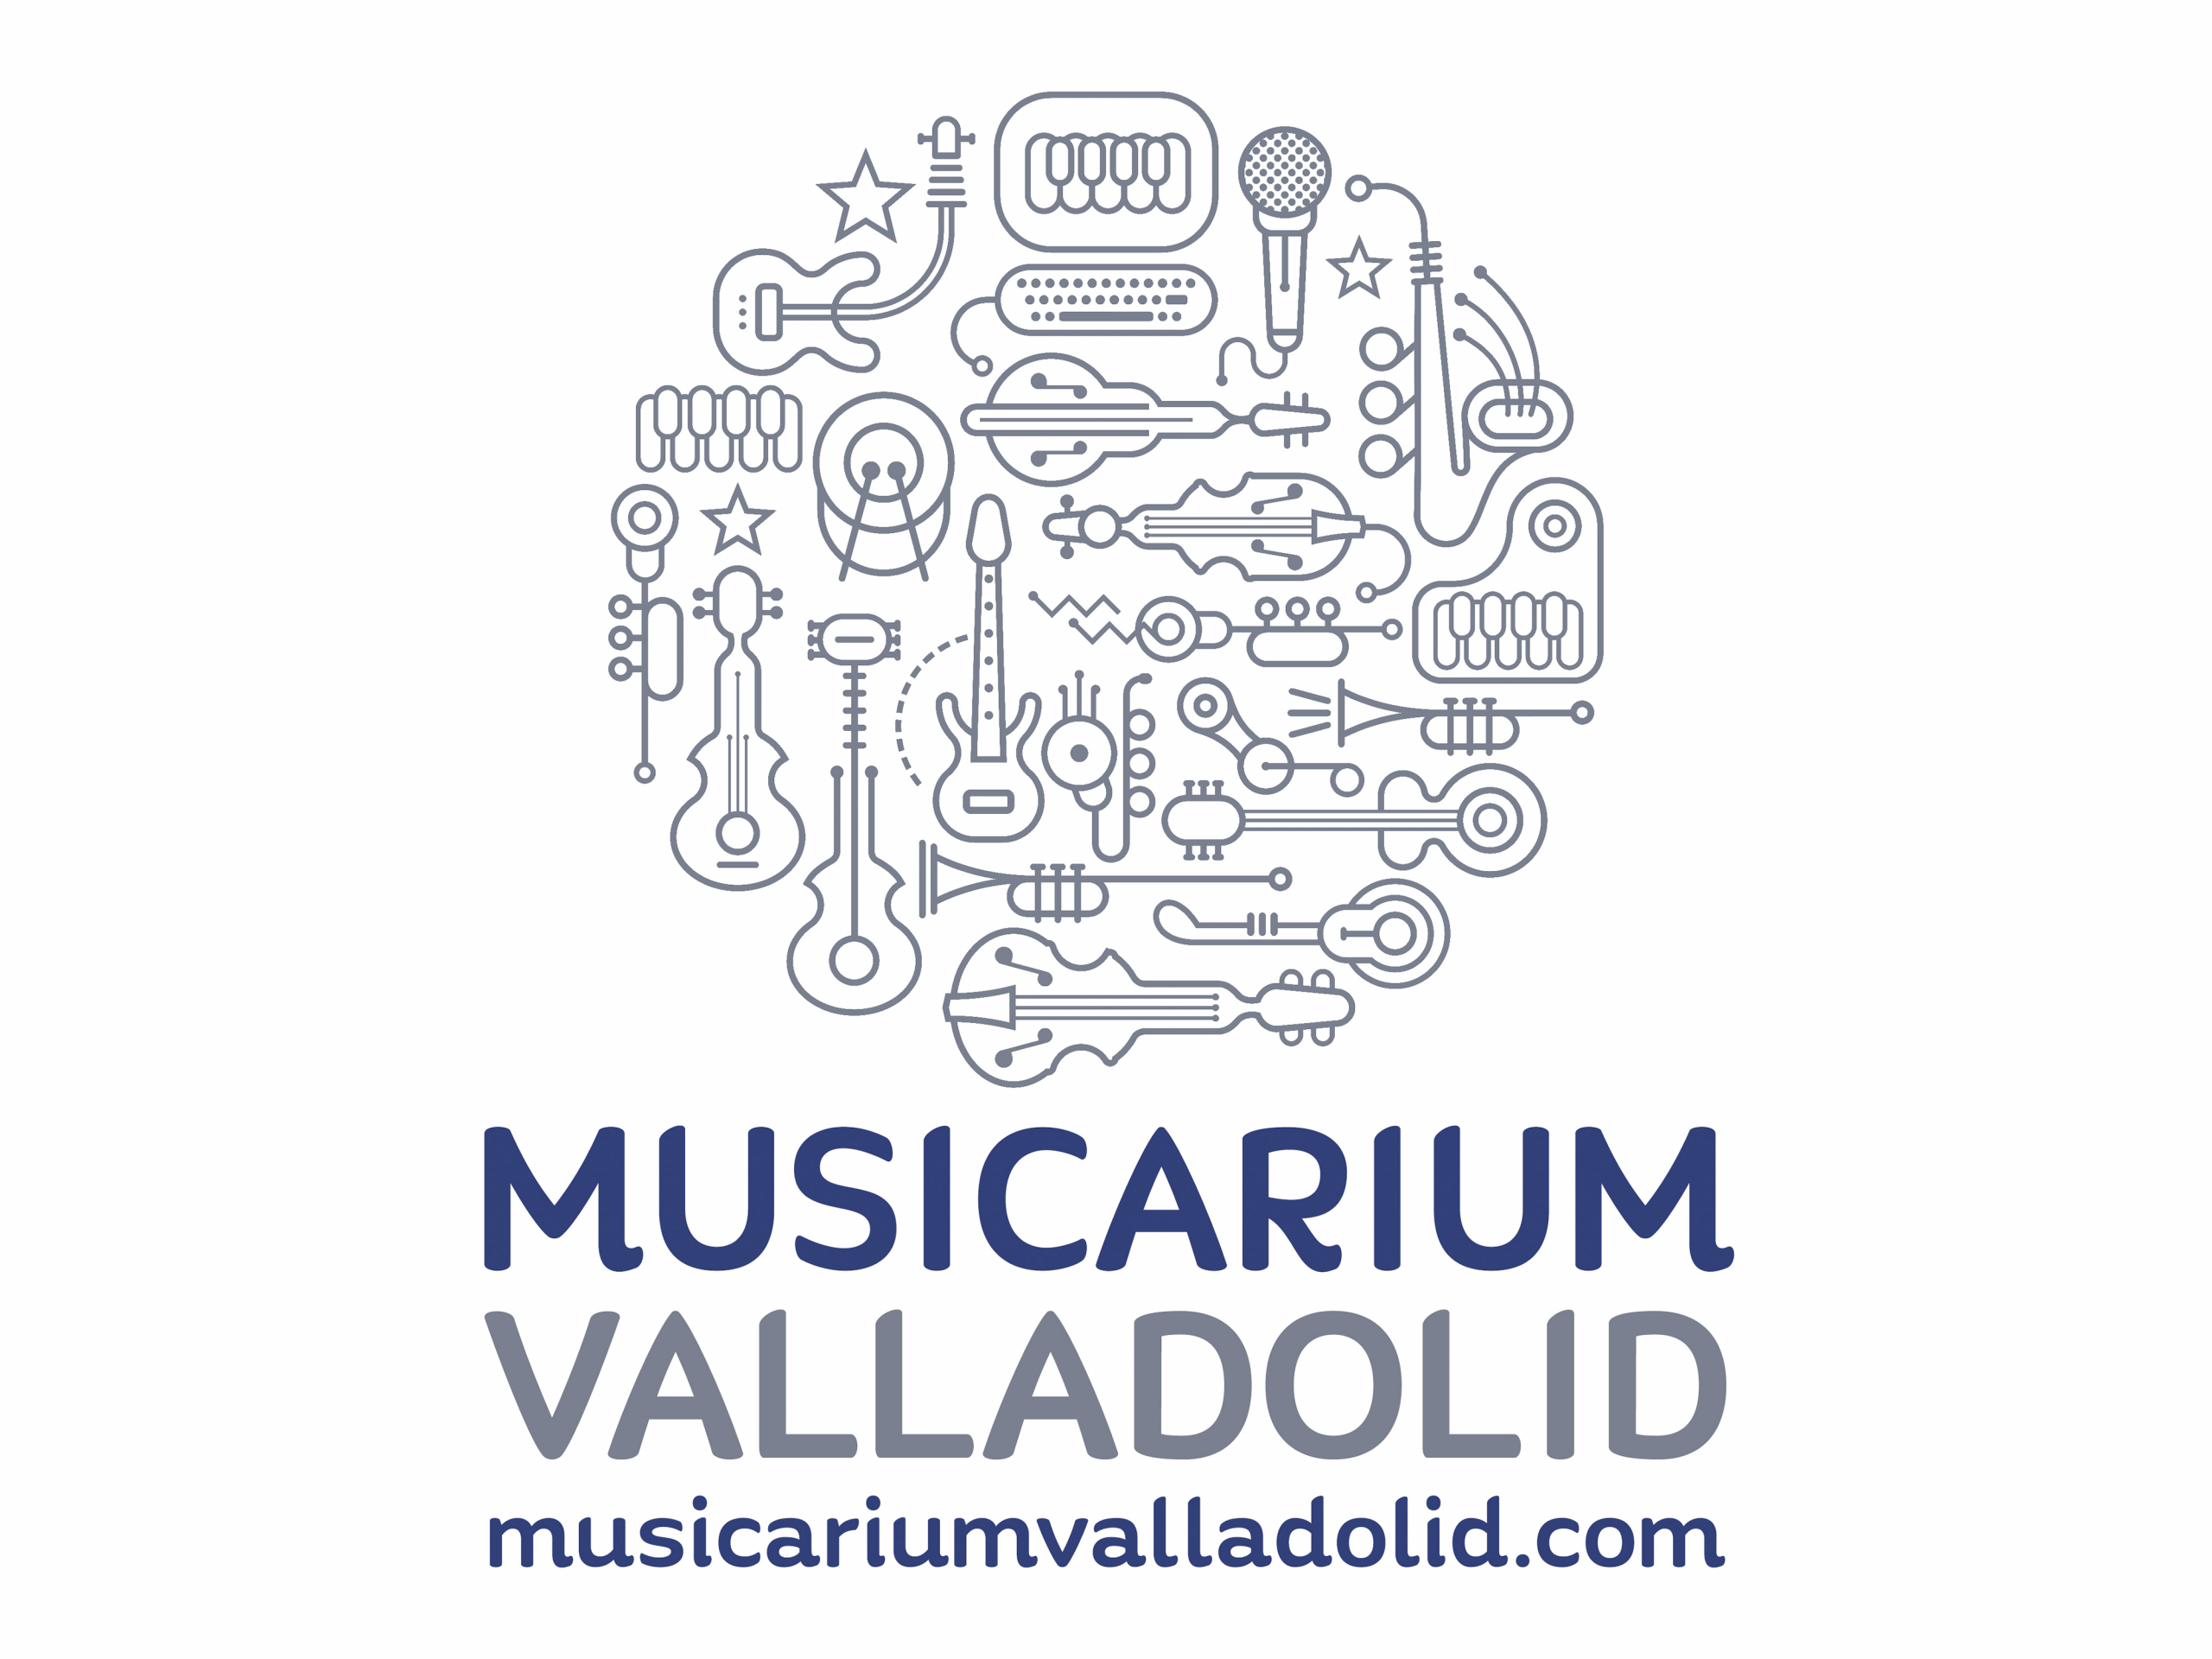 (c) Musicariumvalladolid.com